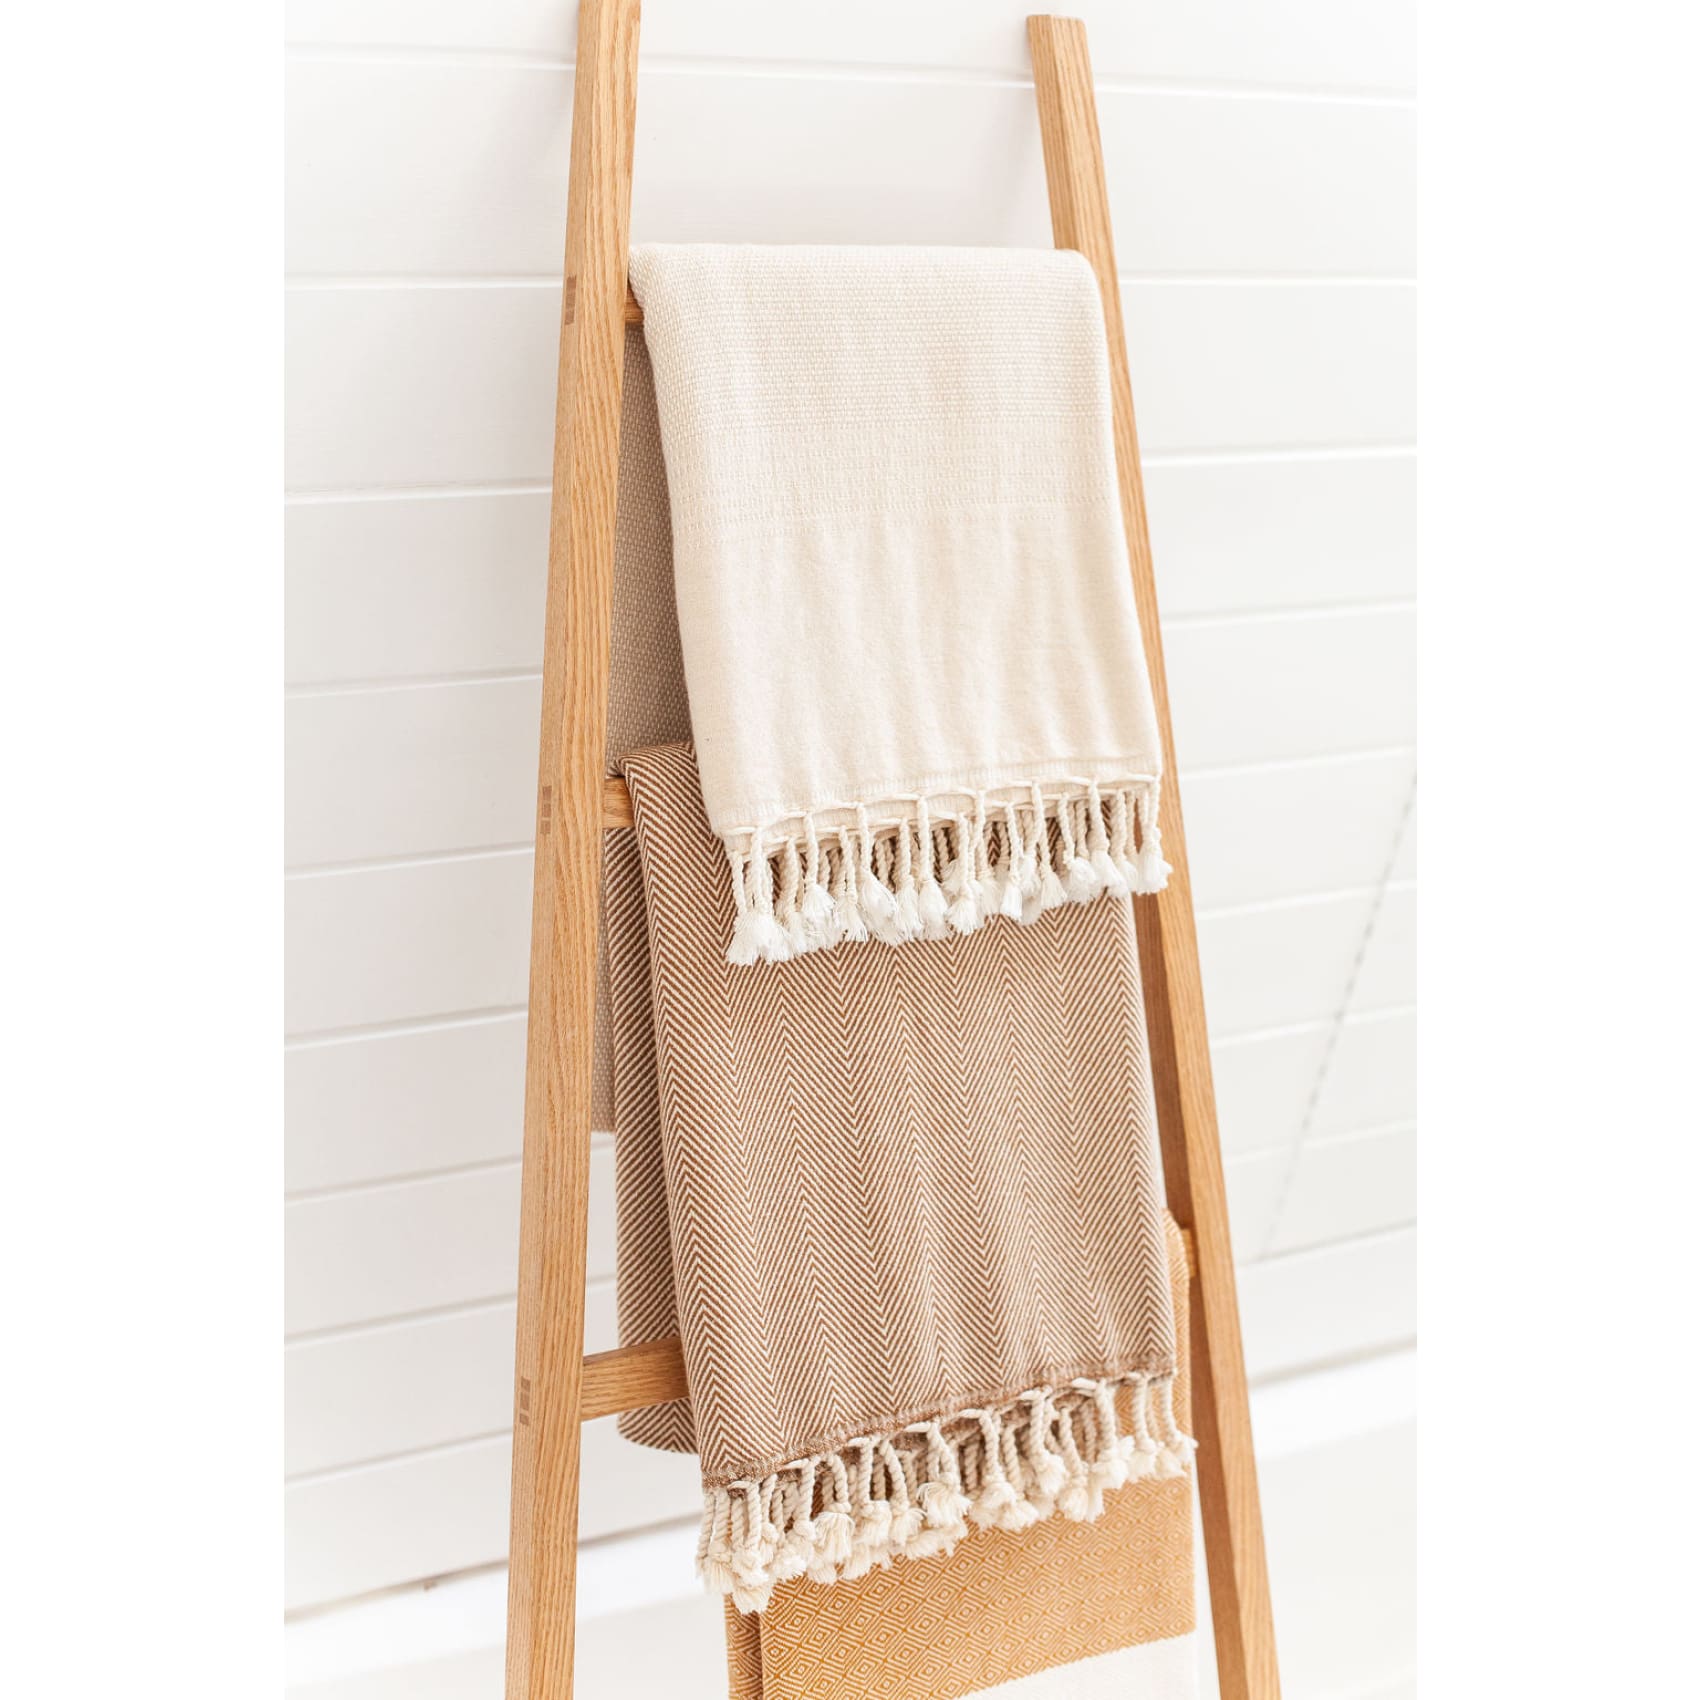 cora-firth-handmade-towel-throw-ladder-in-ash-or-oak-luks-linen-logging-brown-chair-493_58e81111-cf69-44dd-b51f-d46a1b12f916.jpg